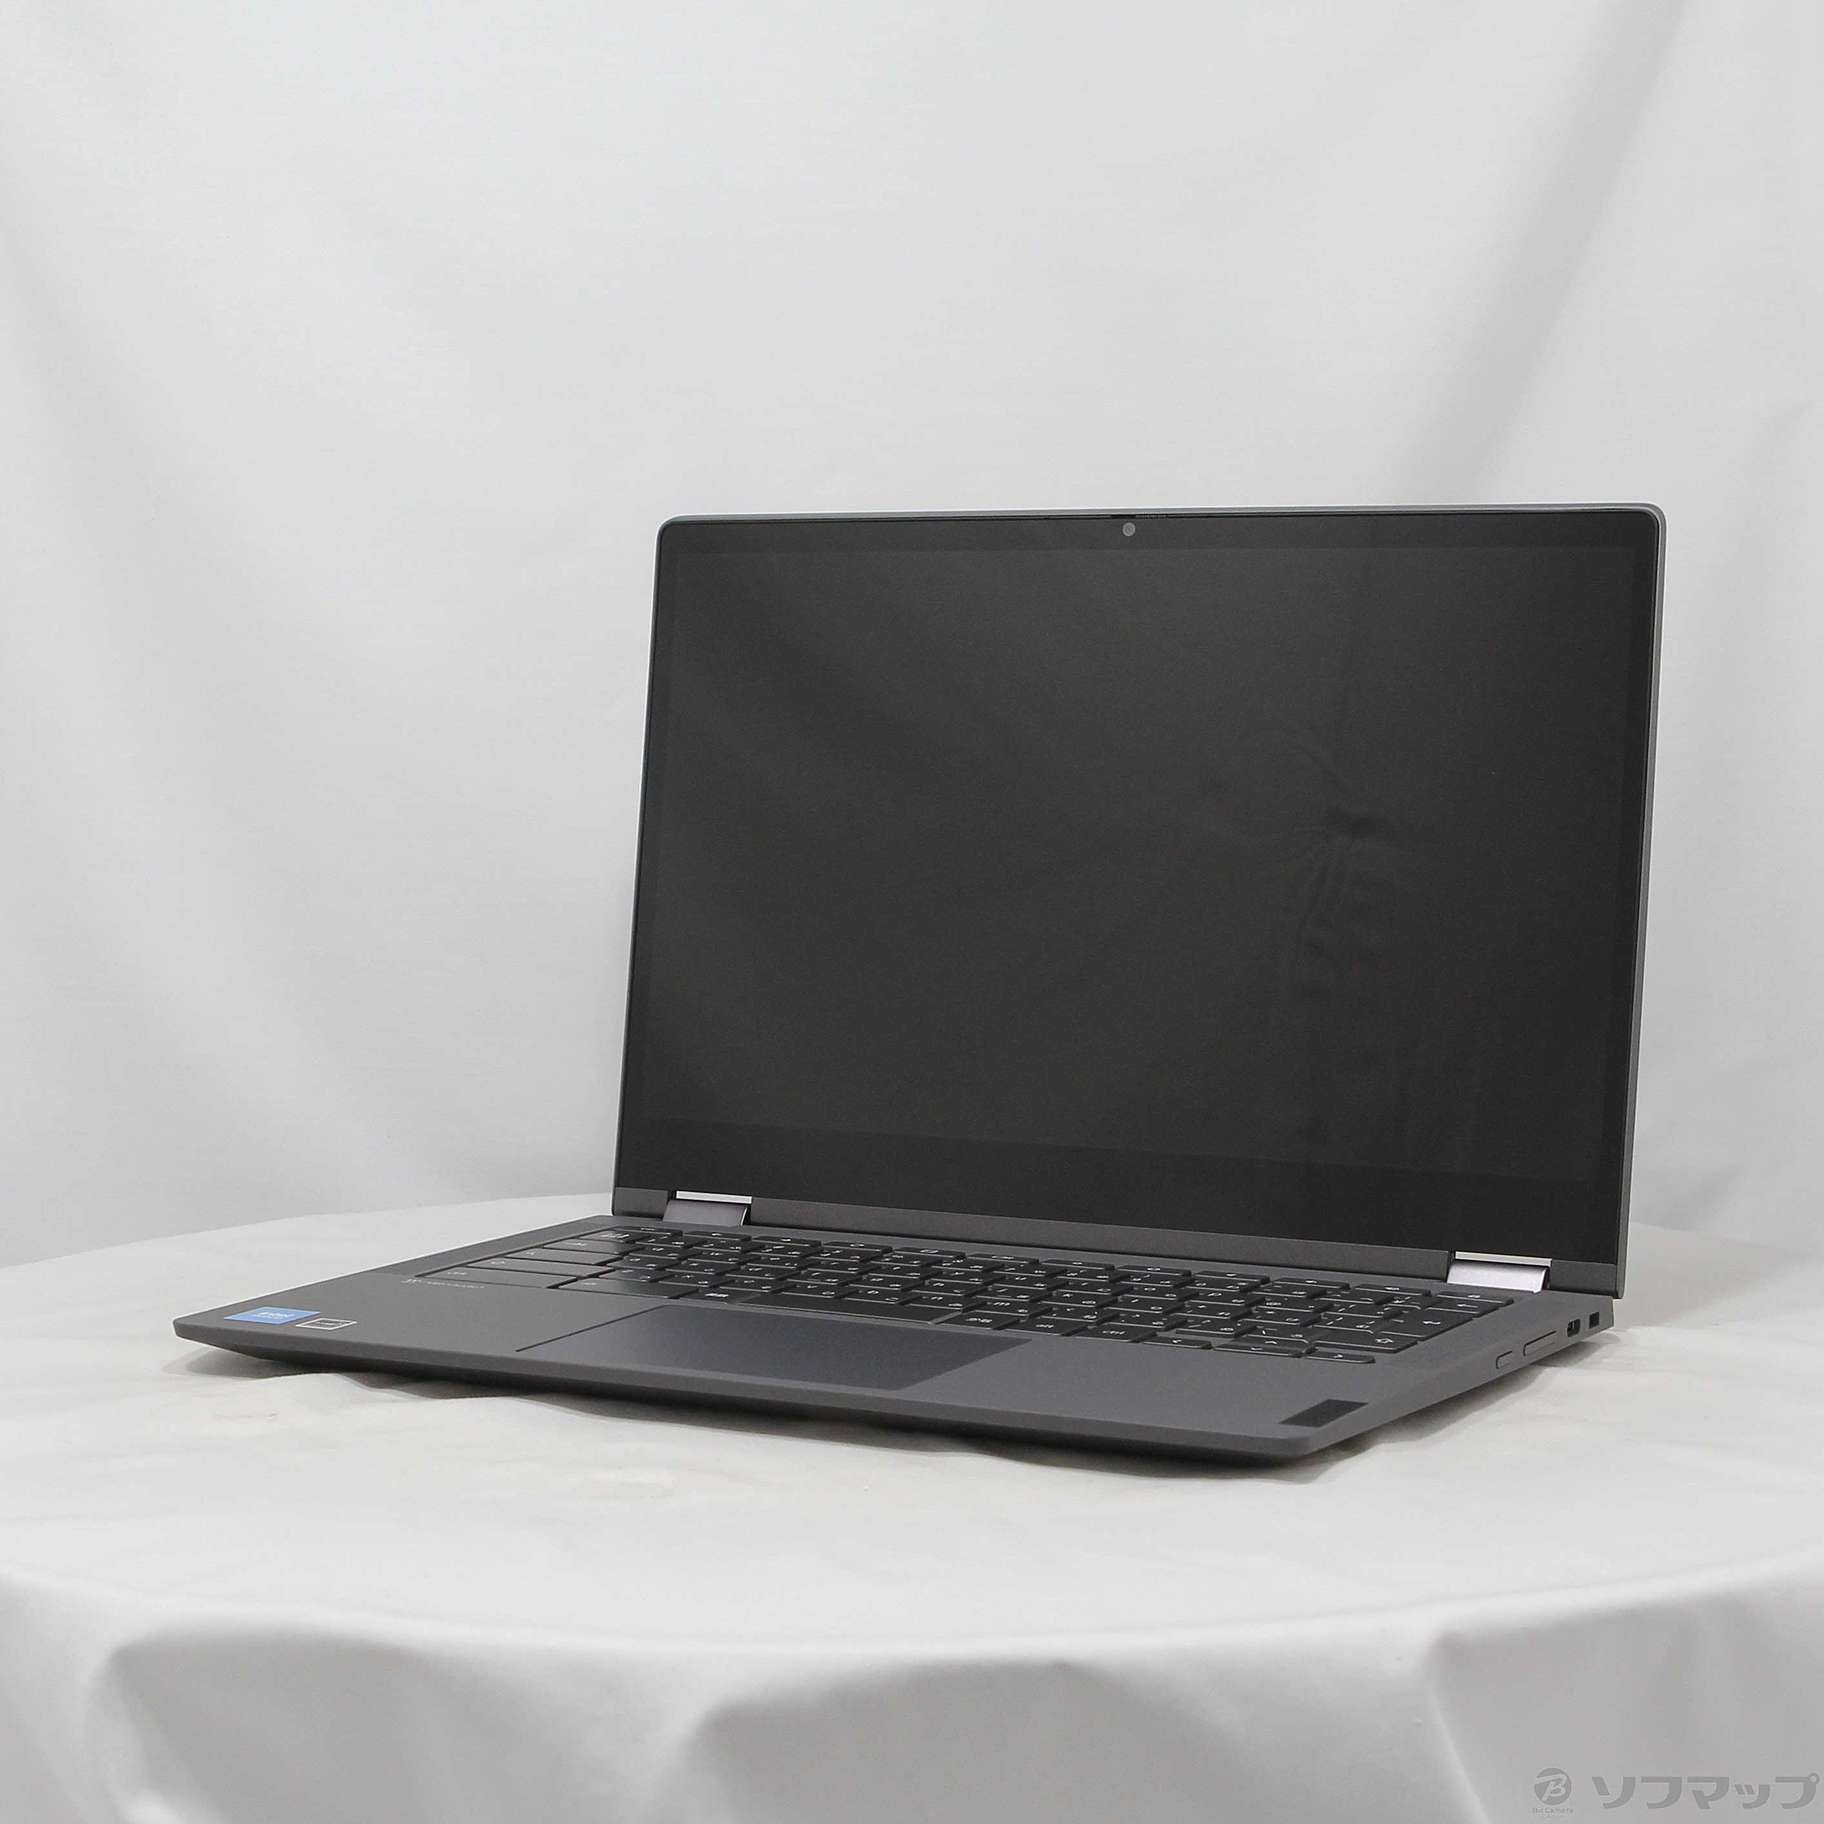 〔展示品〕 IdeaPad Flex 560i Chromebook 82M70024JP アイアングレー